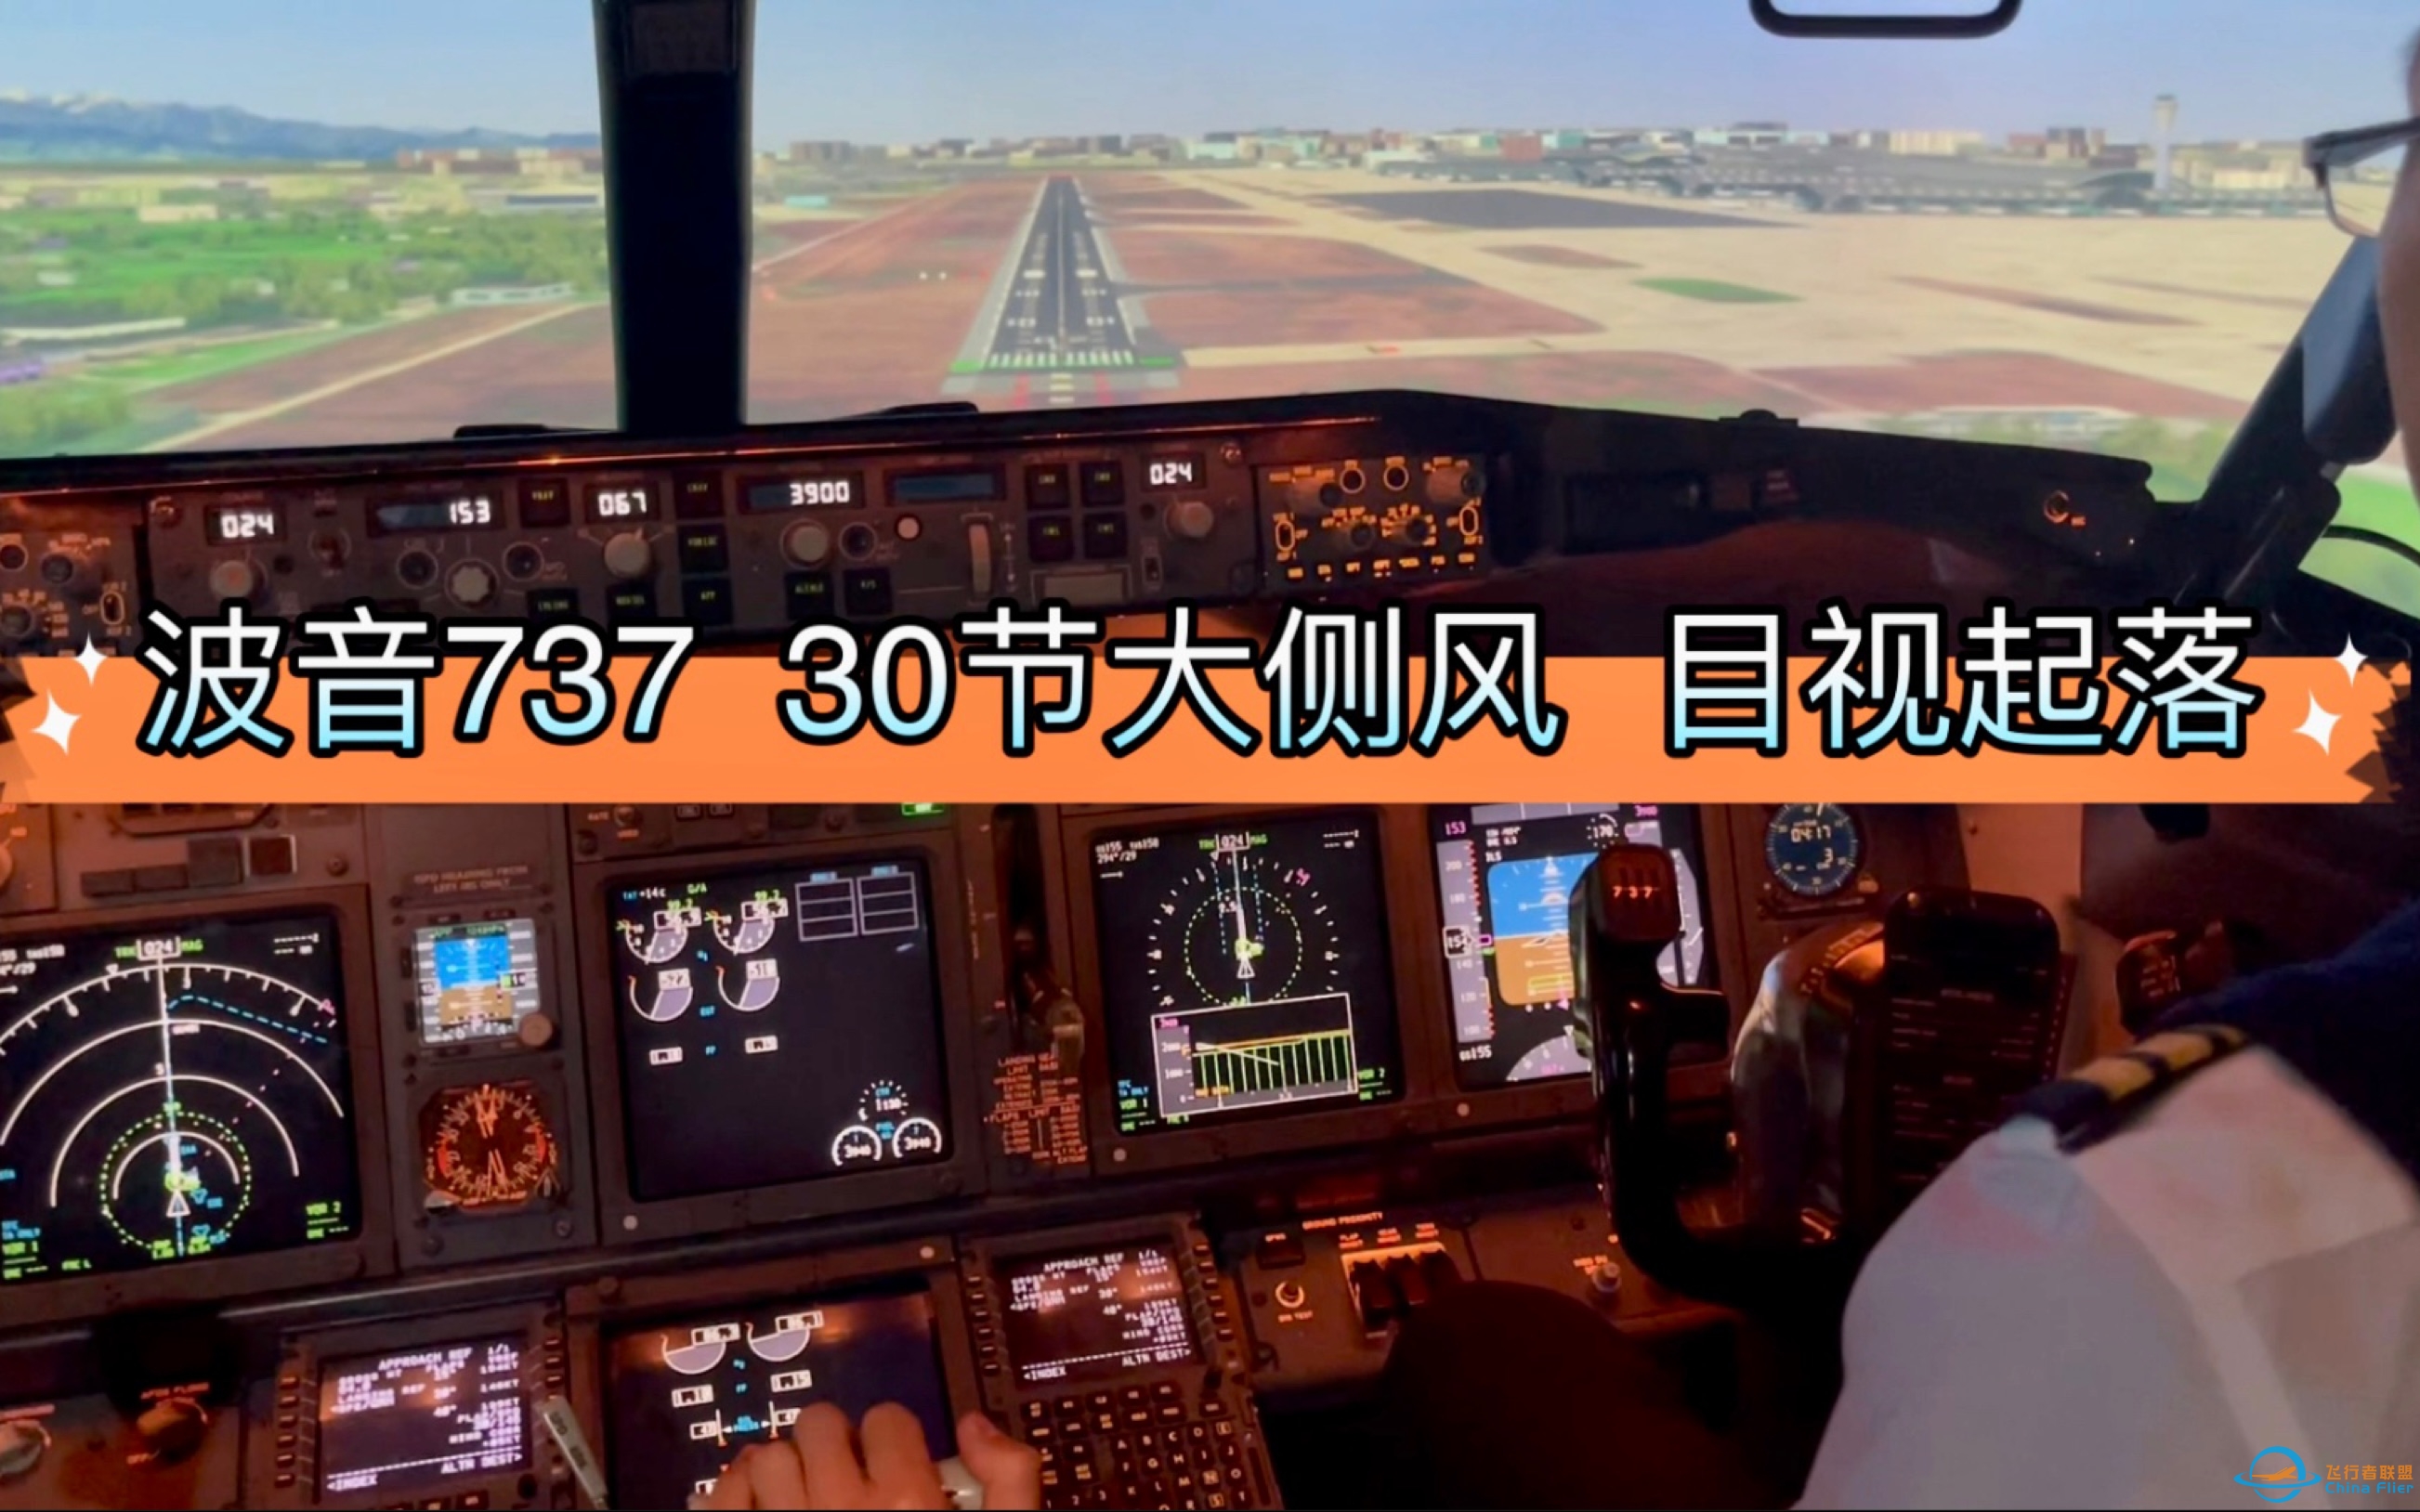 绝对飞行模拟的天花板 737D级全动起落航线-7730 